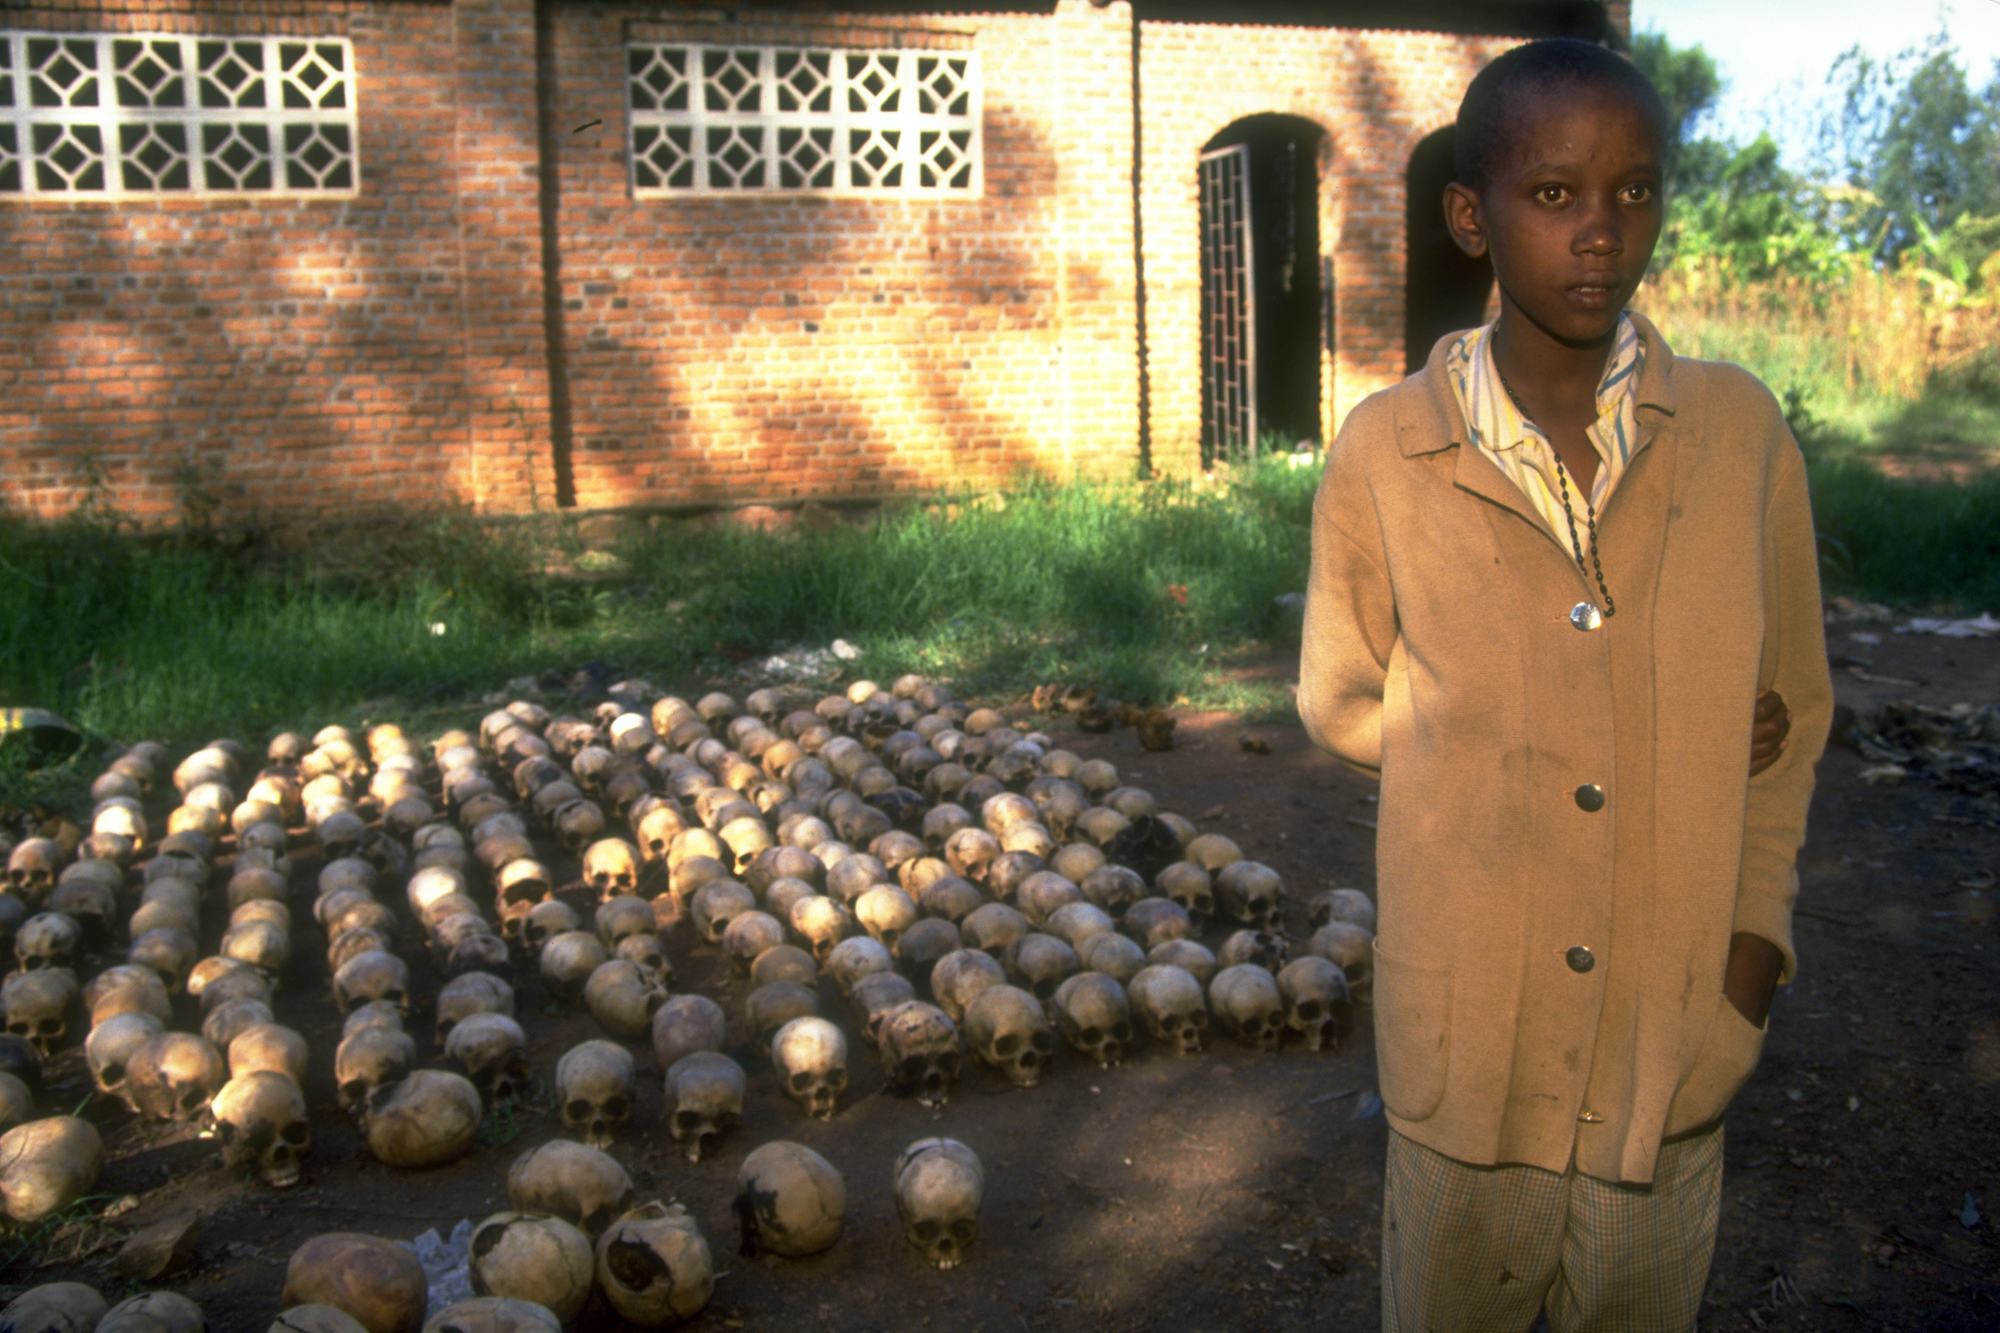 یک پسر 14 ساله رواندایی اهل شهر نیاماتا که در ژوئن 1994 از آن عکس گرفته شد، با پنهان شدن در زیر اجساد به مدت دو روز از نسل کشی جان سالم به در برد.